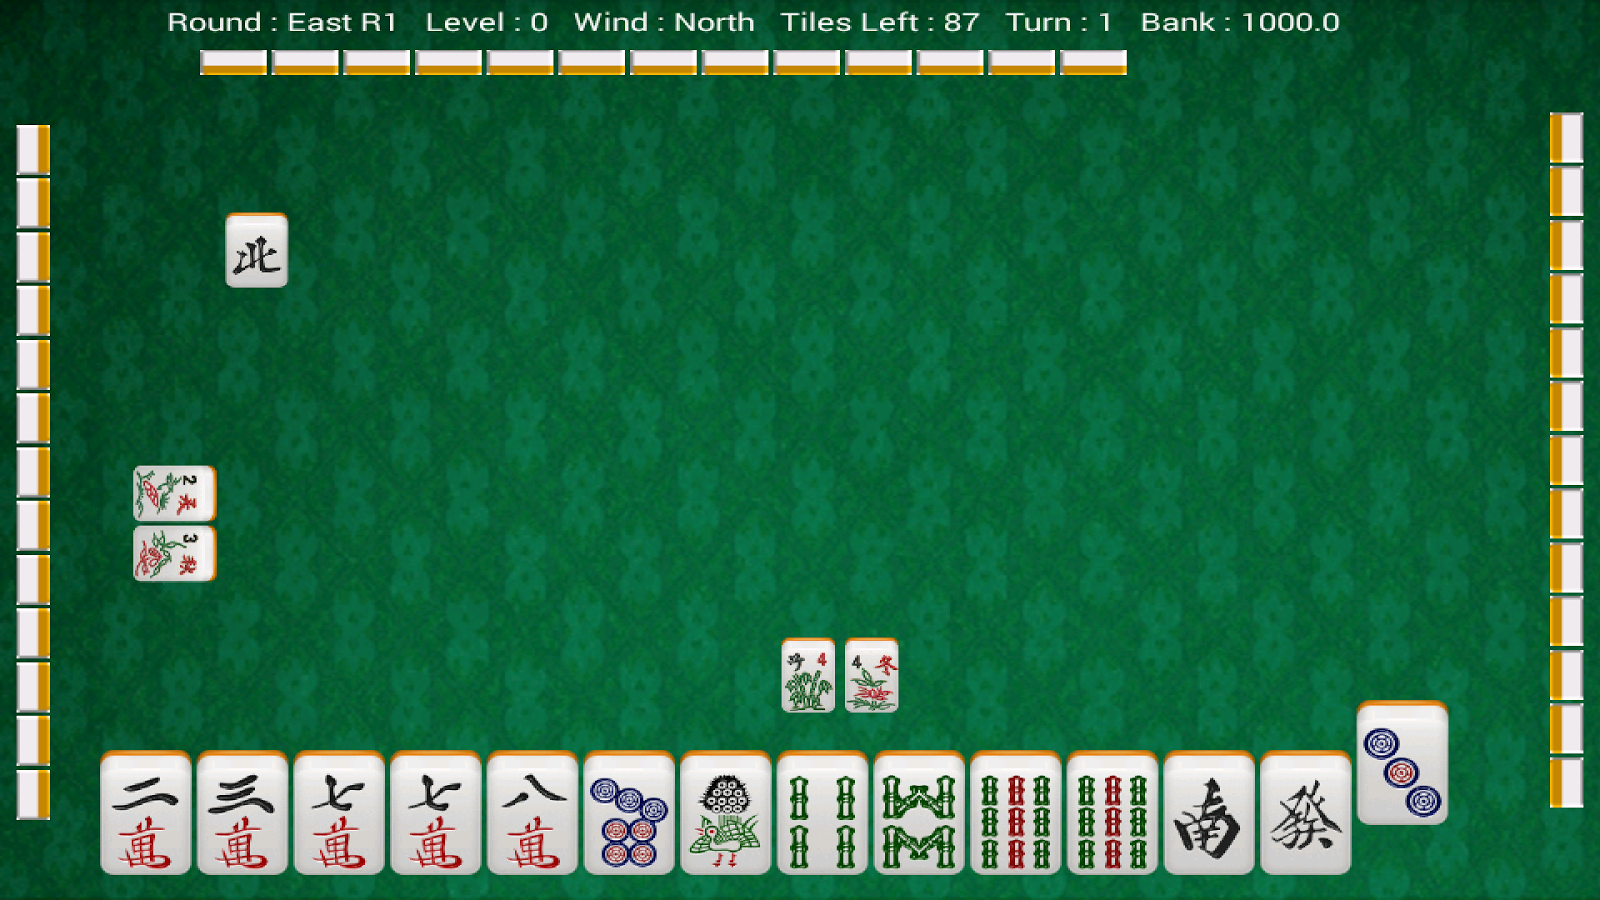 Hong Kong Style Mahjong Free PC Download